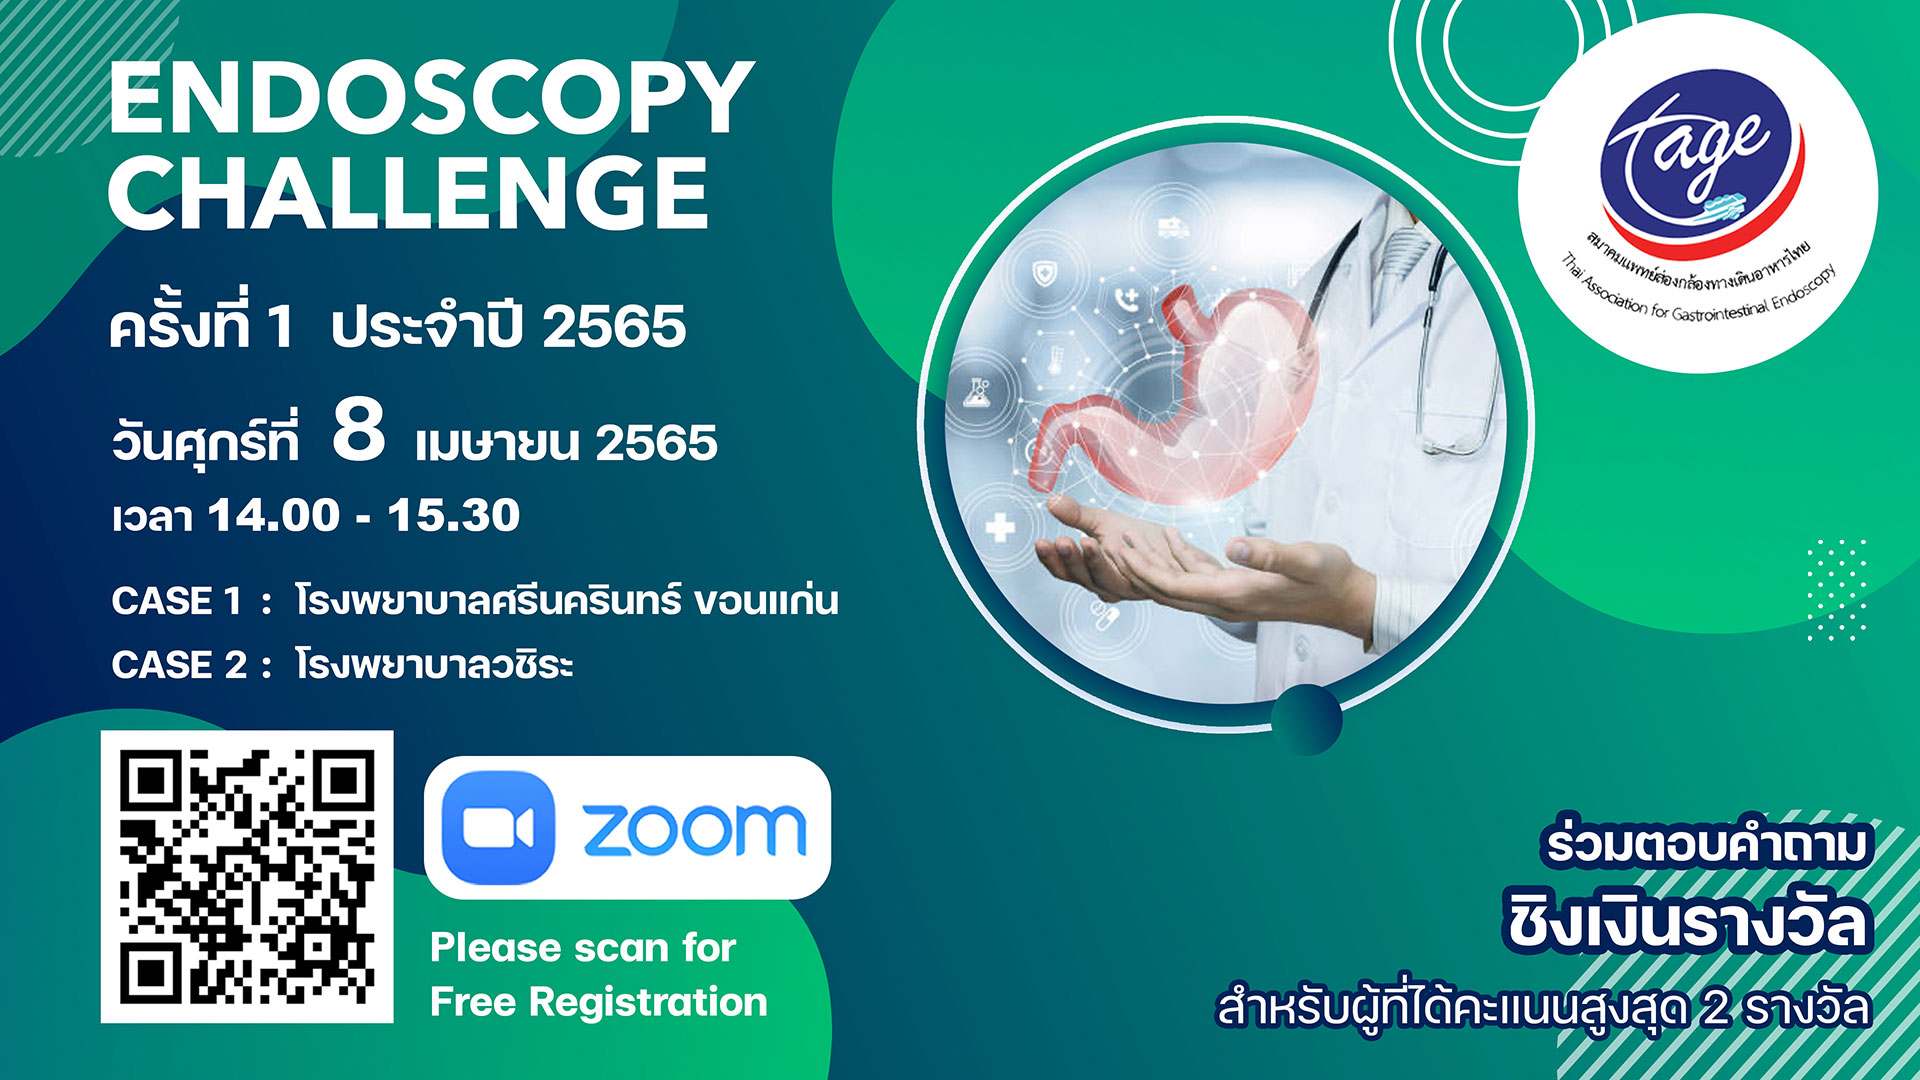 งาน TAGE Endoscopy Challenge ครั้งที่ 1 ประจำปี 2565